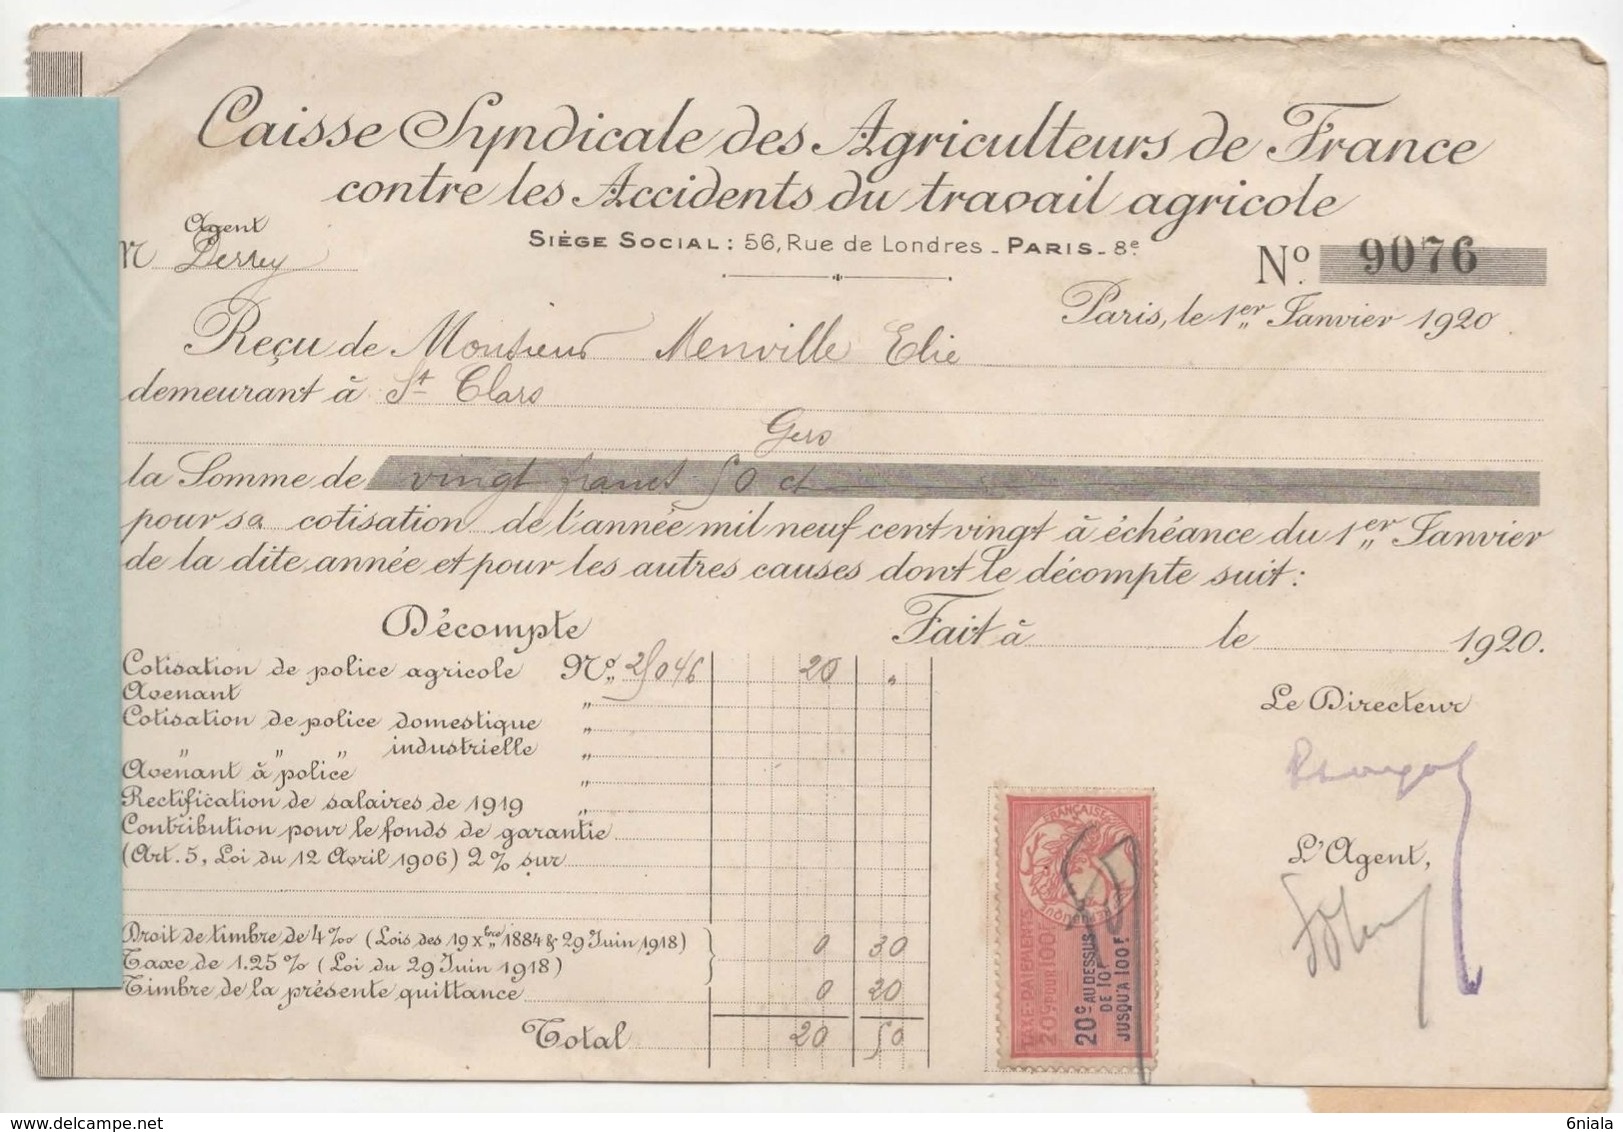 1492 QUITTANCE FACTURE Caisse Syndicale Agriculteurs De France 1 Janvier 1920 32 St  Clar Gers Timbre Fiscal - Banque & Assurance